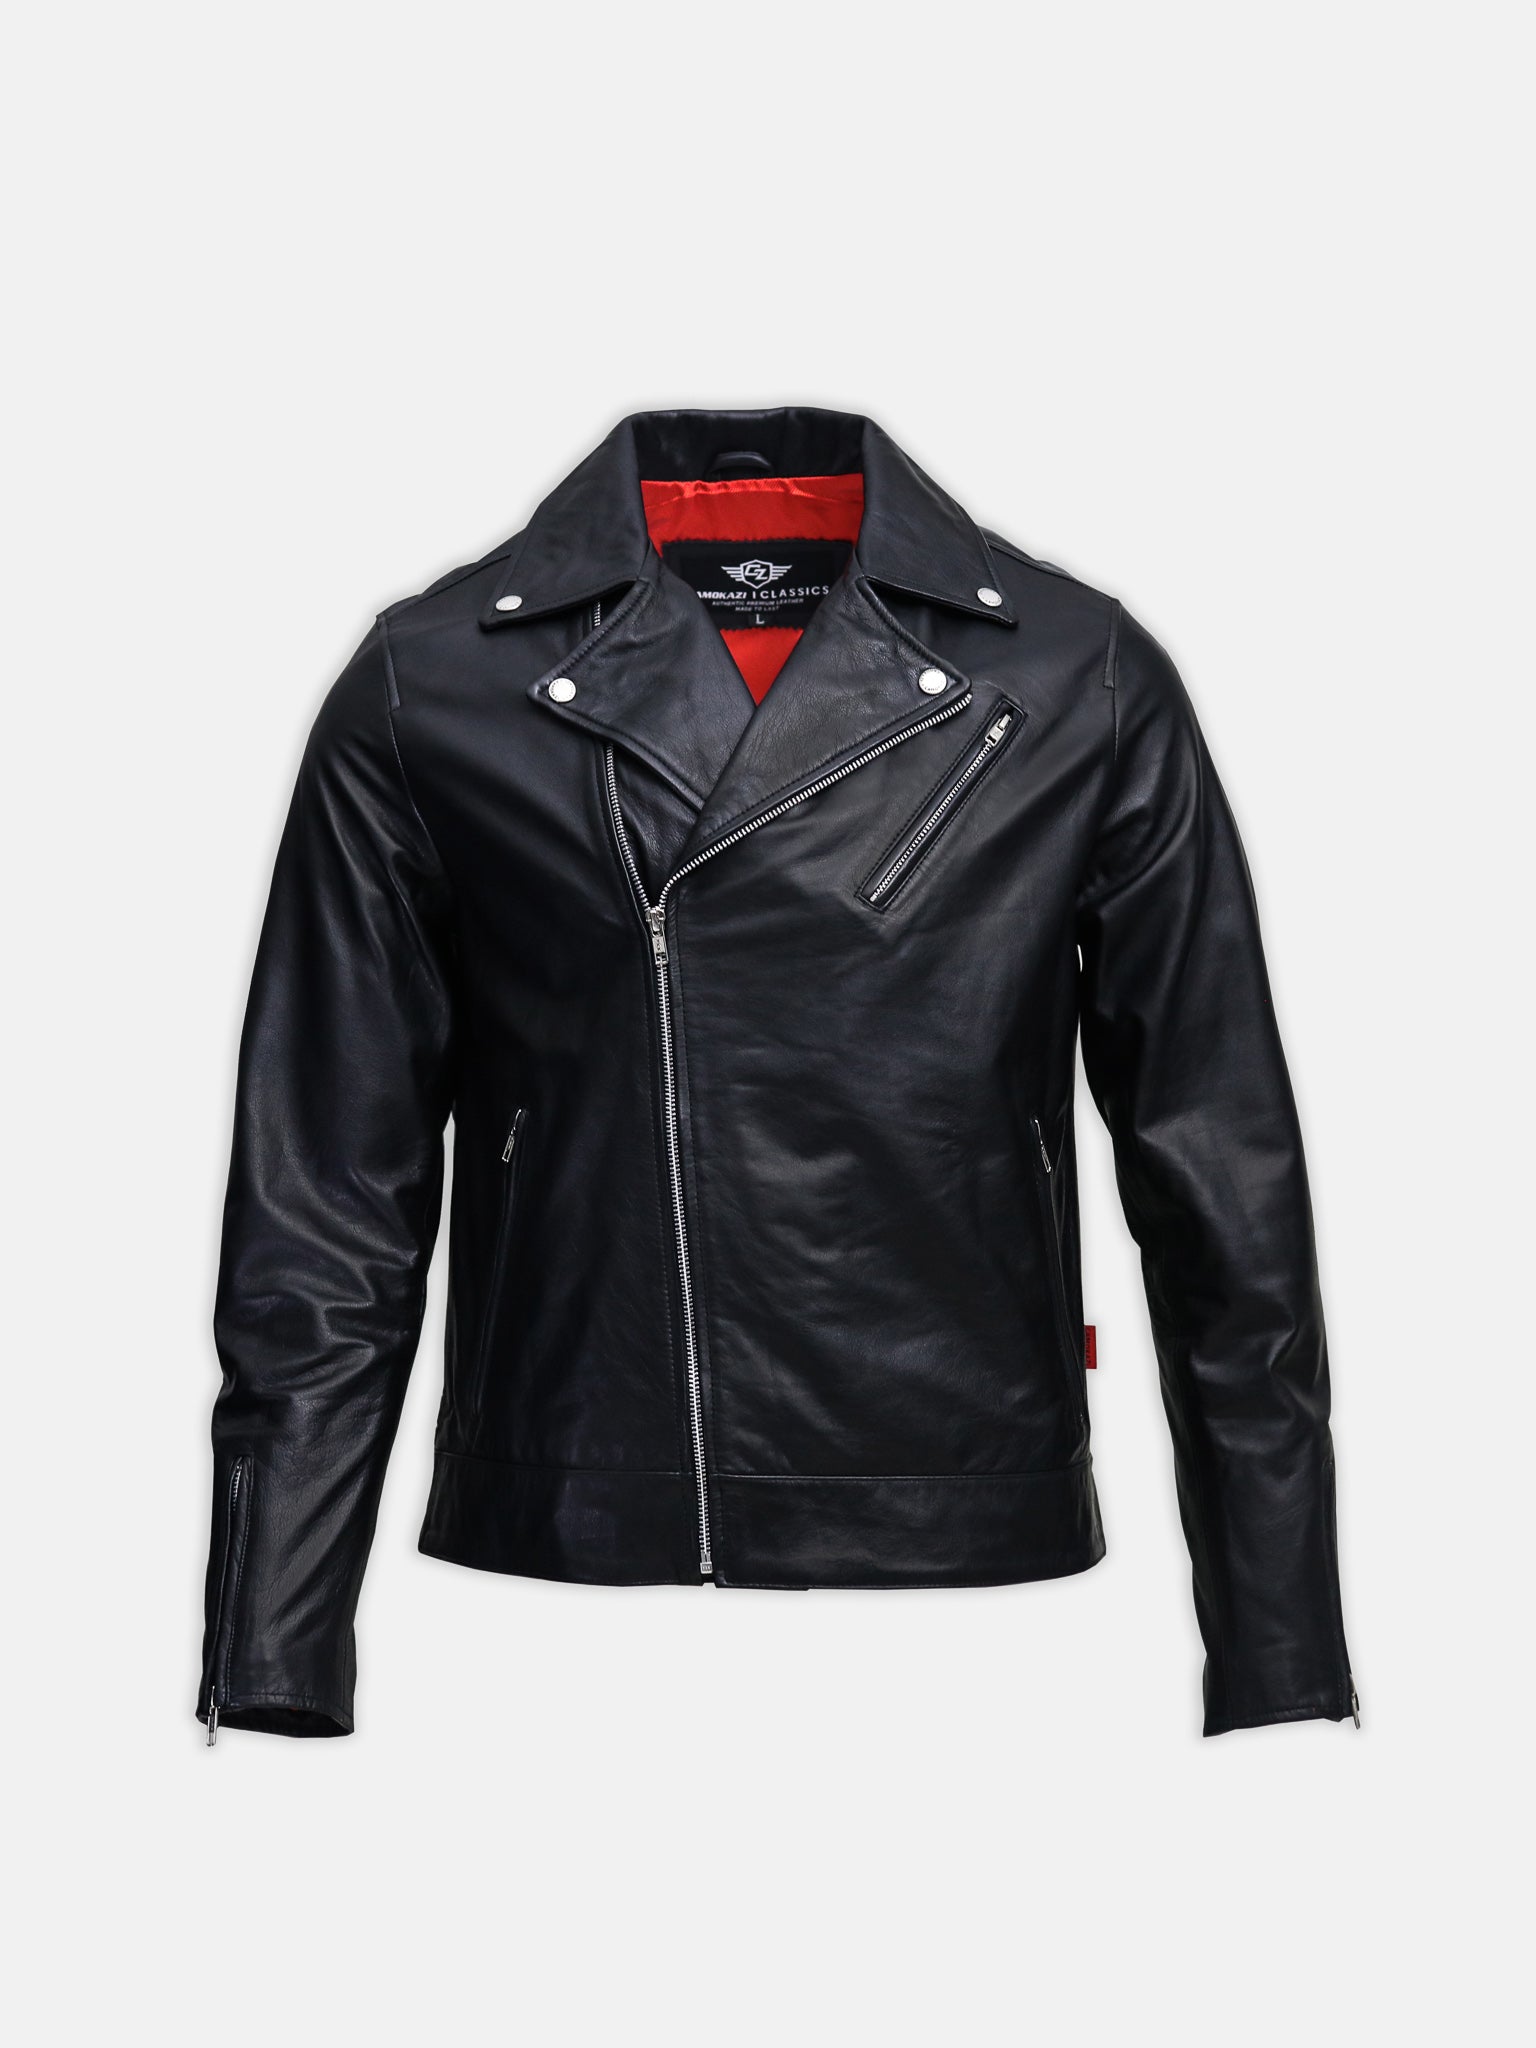 mens leather biker jacket 